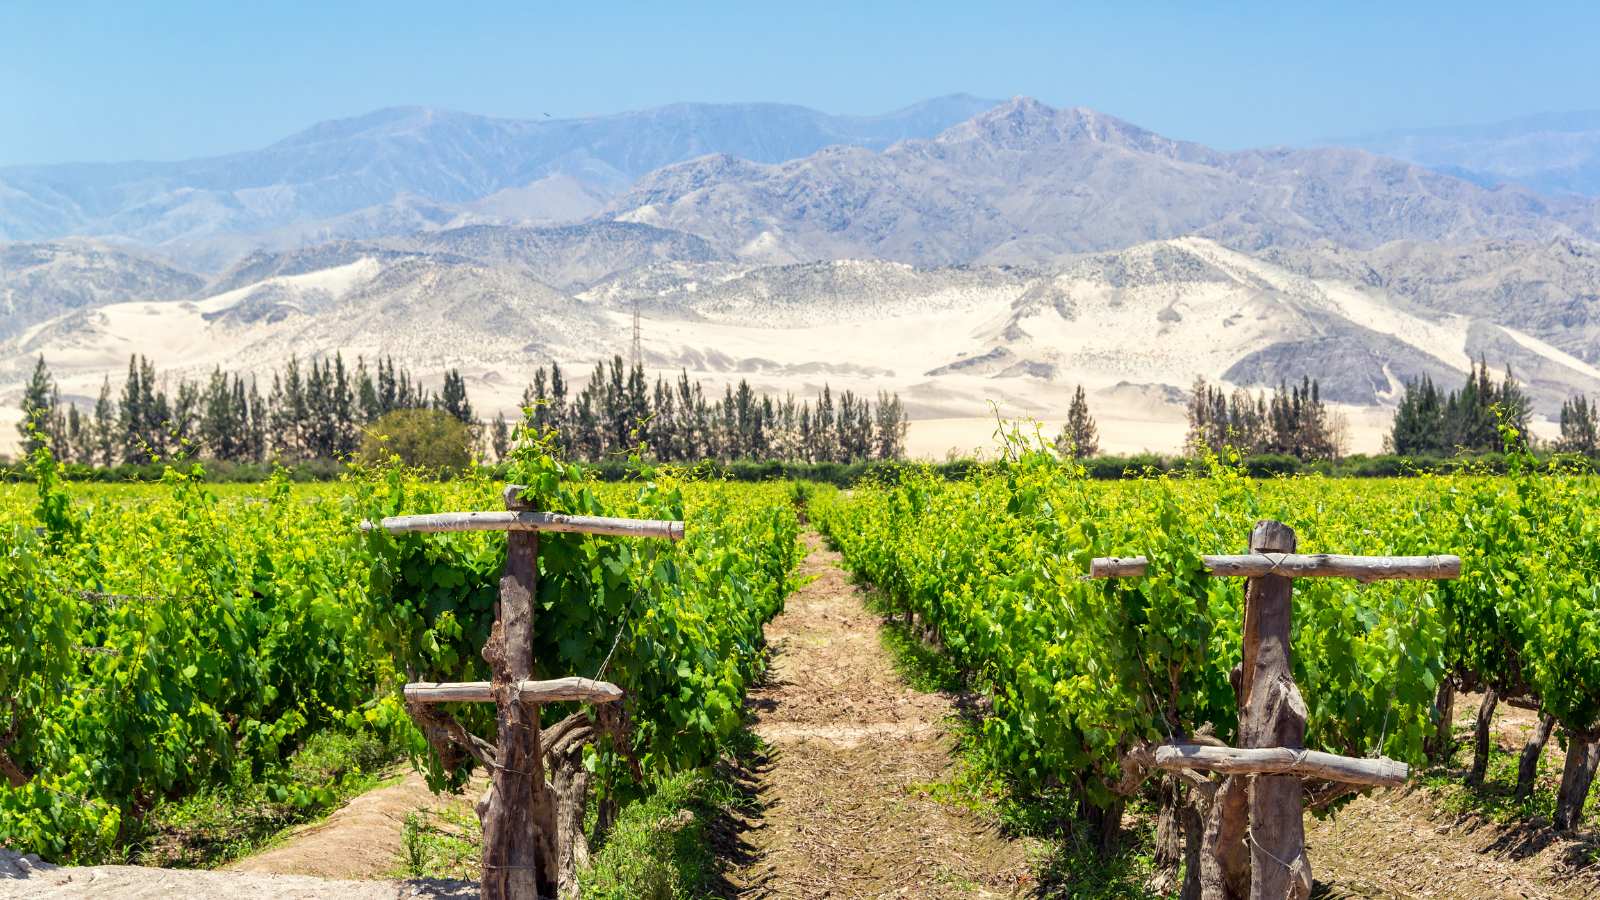 Los vinos peruanos: ¿Haciendo camino al andar?